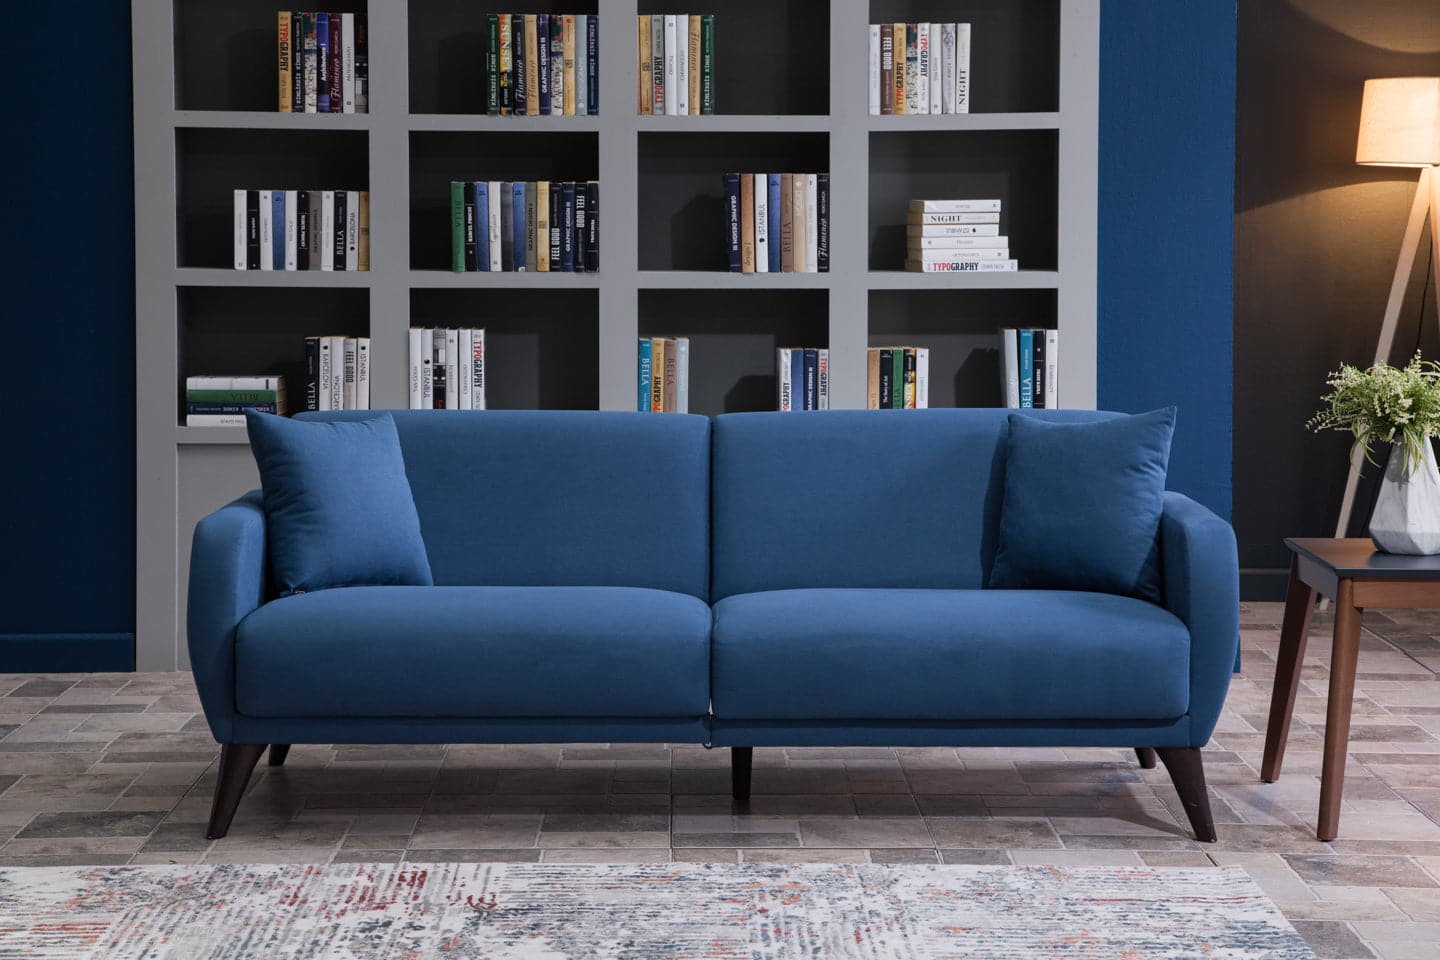 Flexy Sofa In A Box Sofa by Bellona ZIGANA INDIGO BLUE